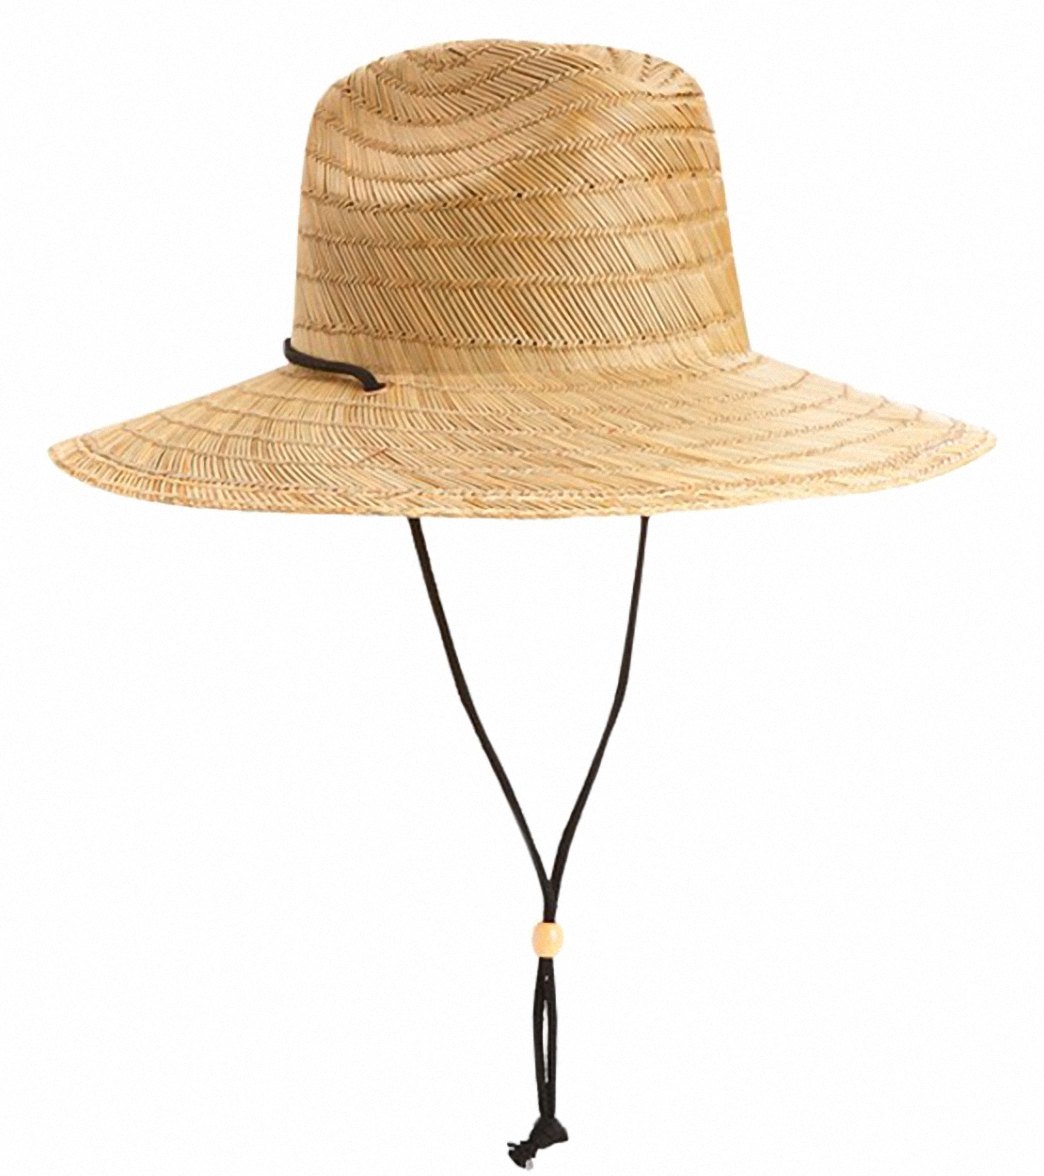 Quiksilver Pierside Lifeguard Hat - Natural Large/Xl - Swimoutlet.com